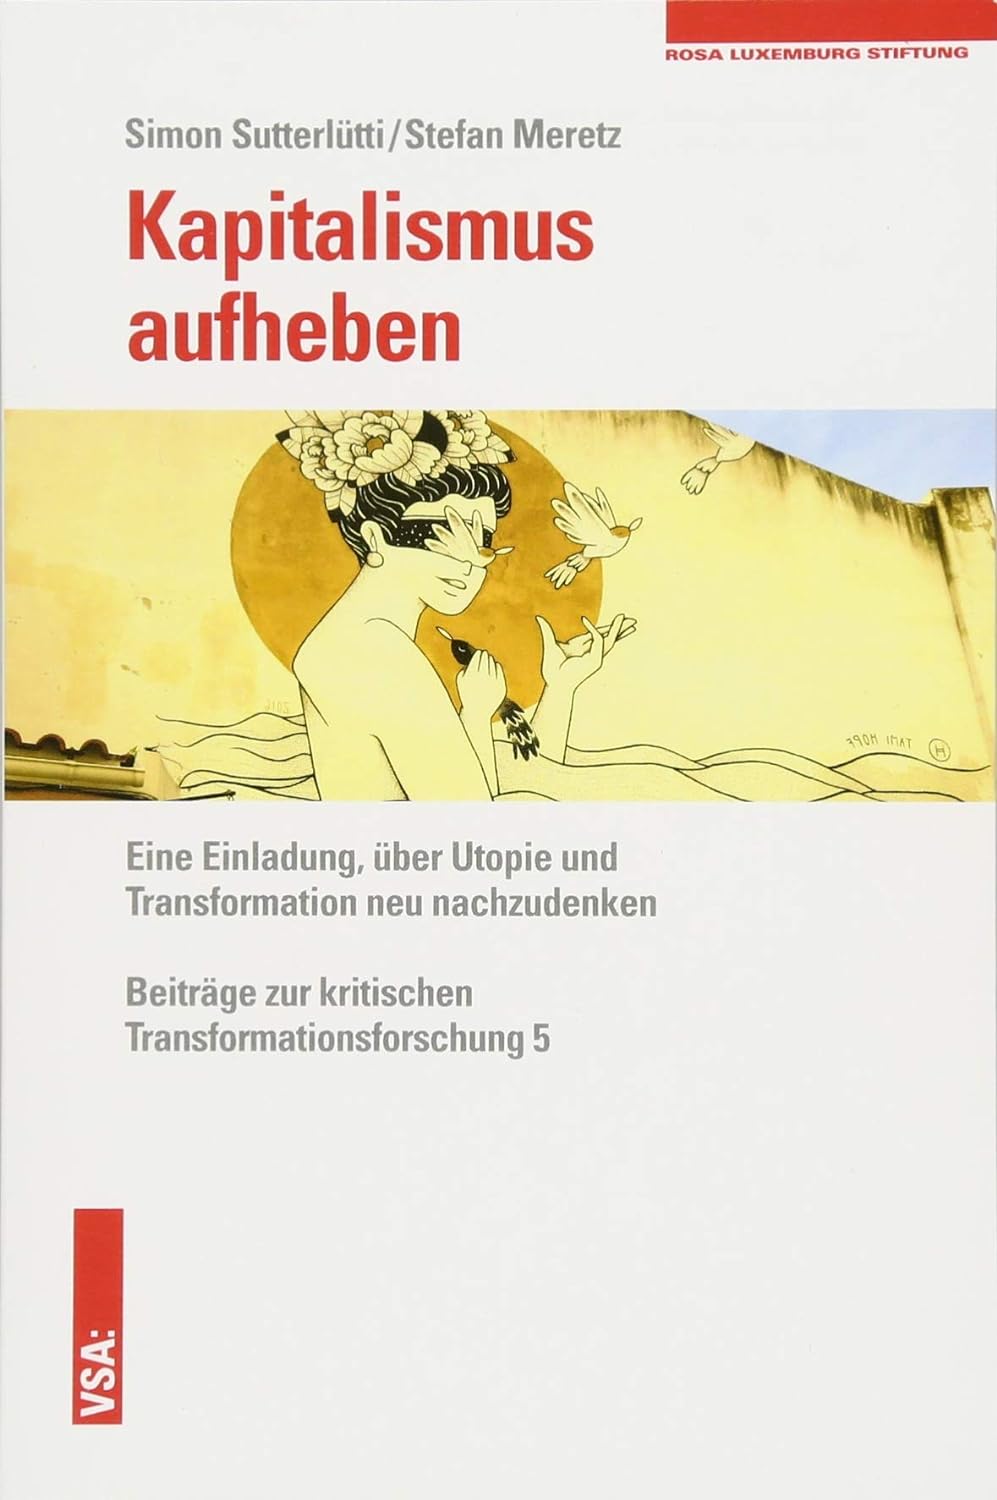 Kapitalismus aufheben (German language, 2018, VSA: Verlag)